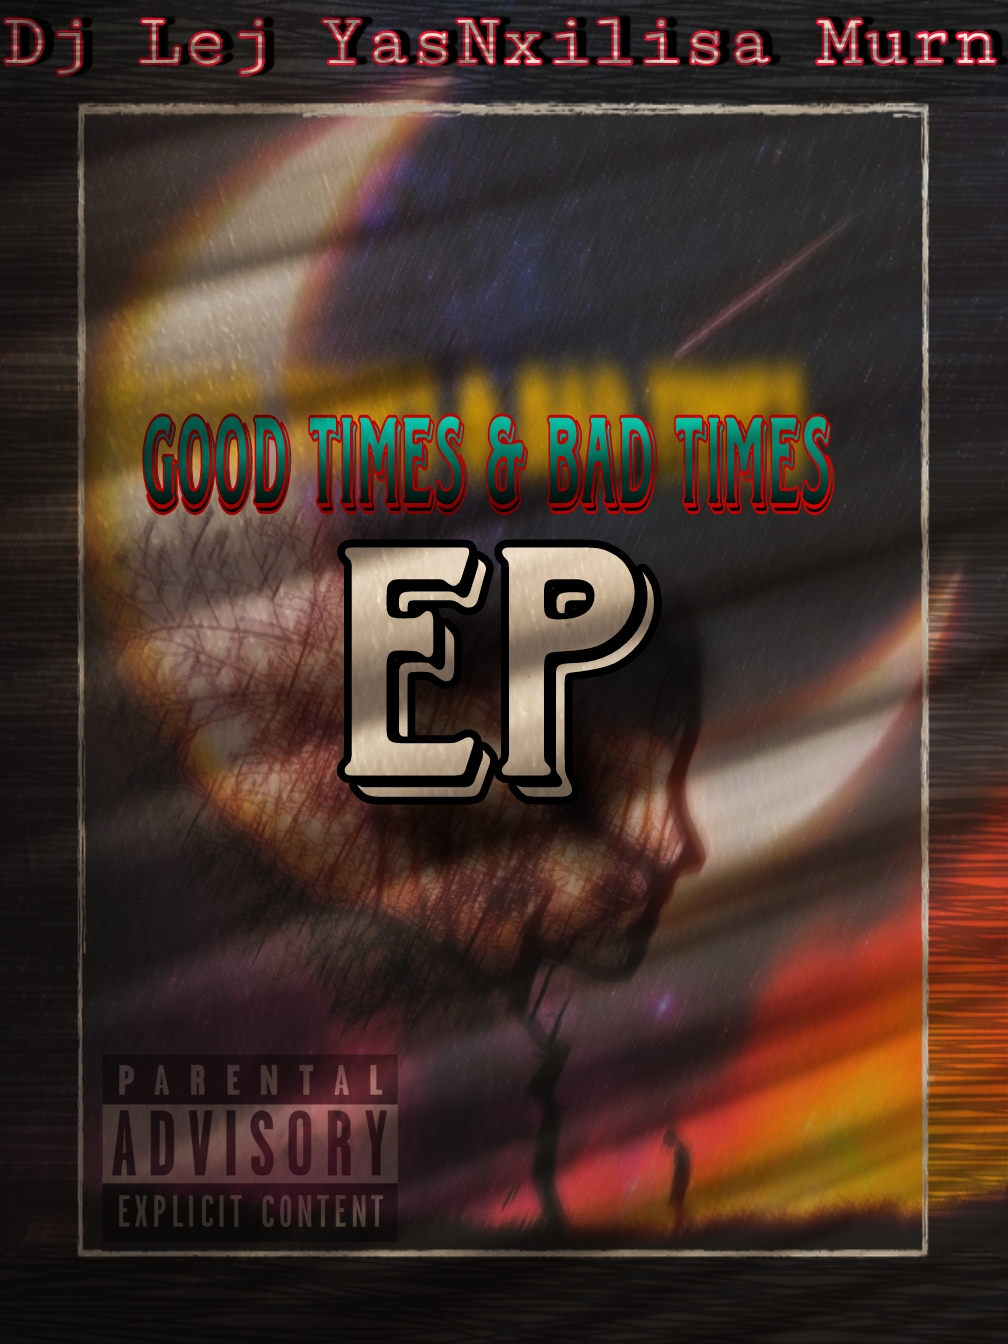 Good times & Bad times EP - Dj Lej